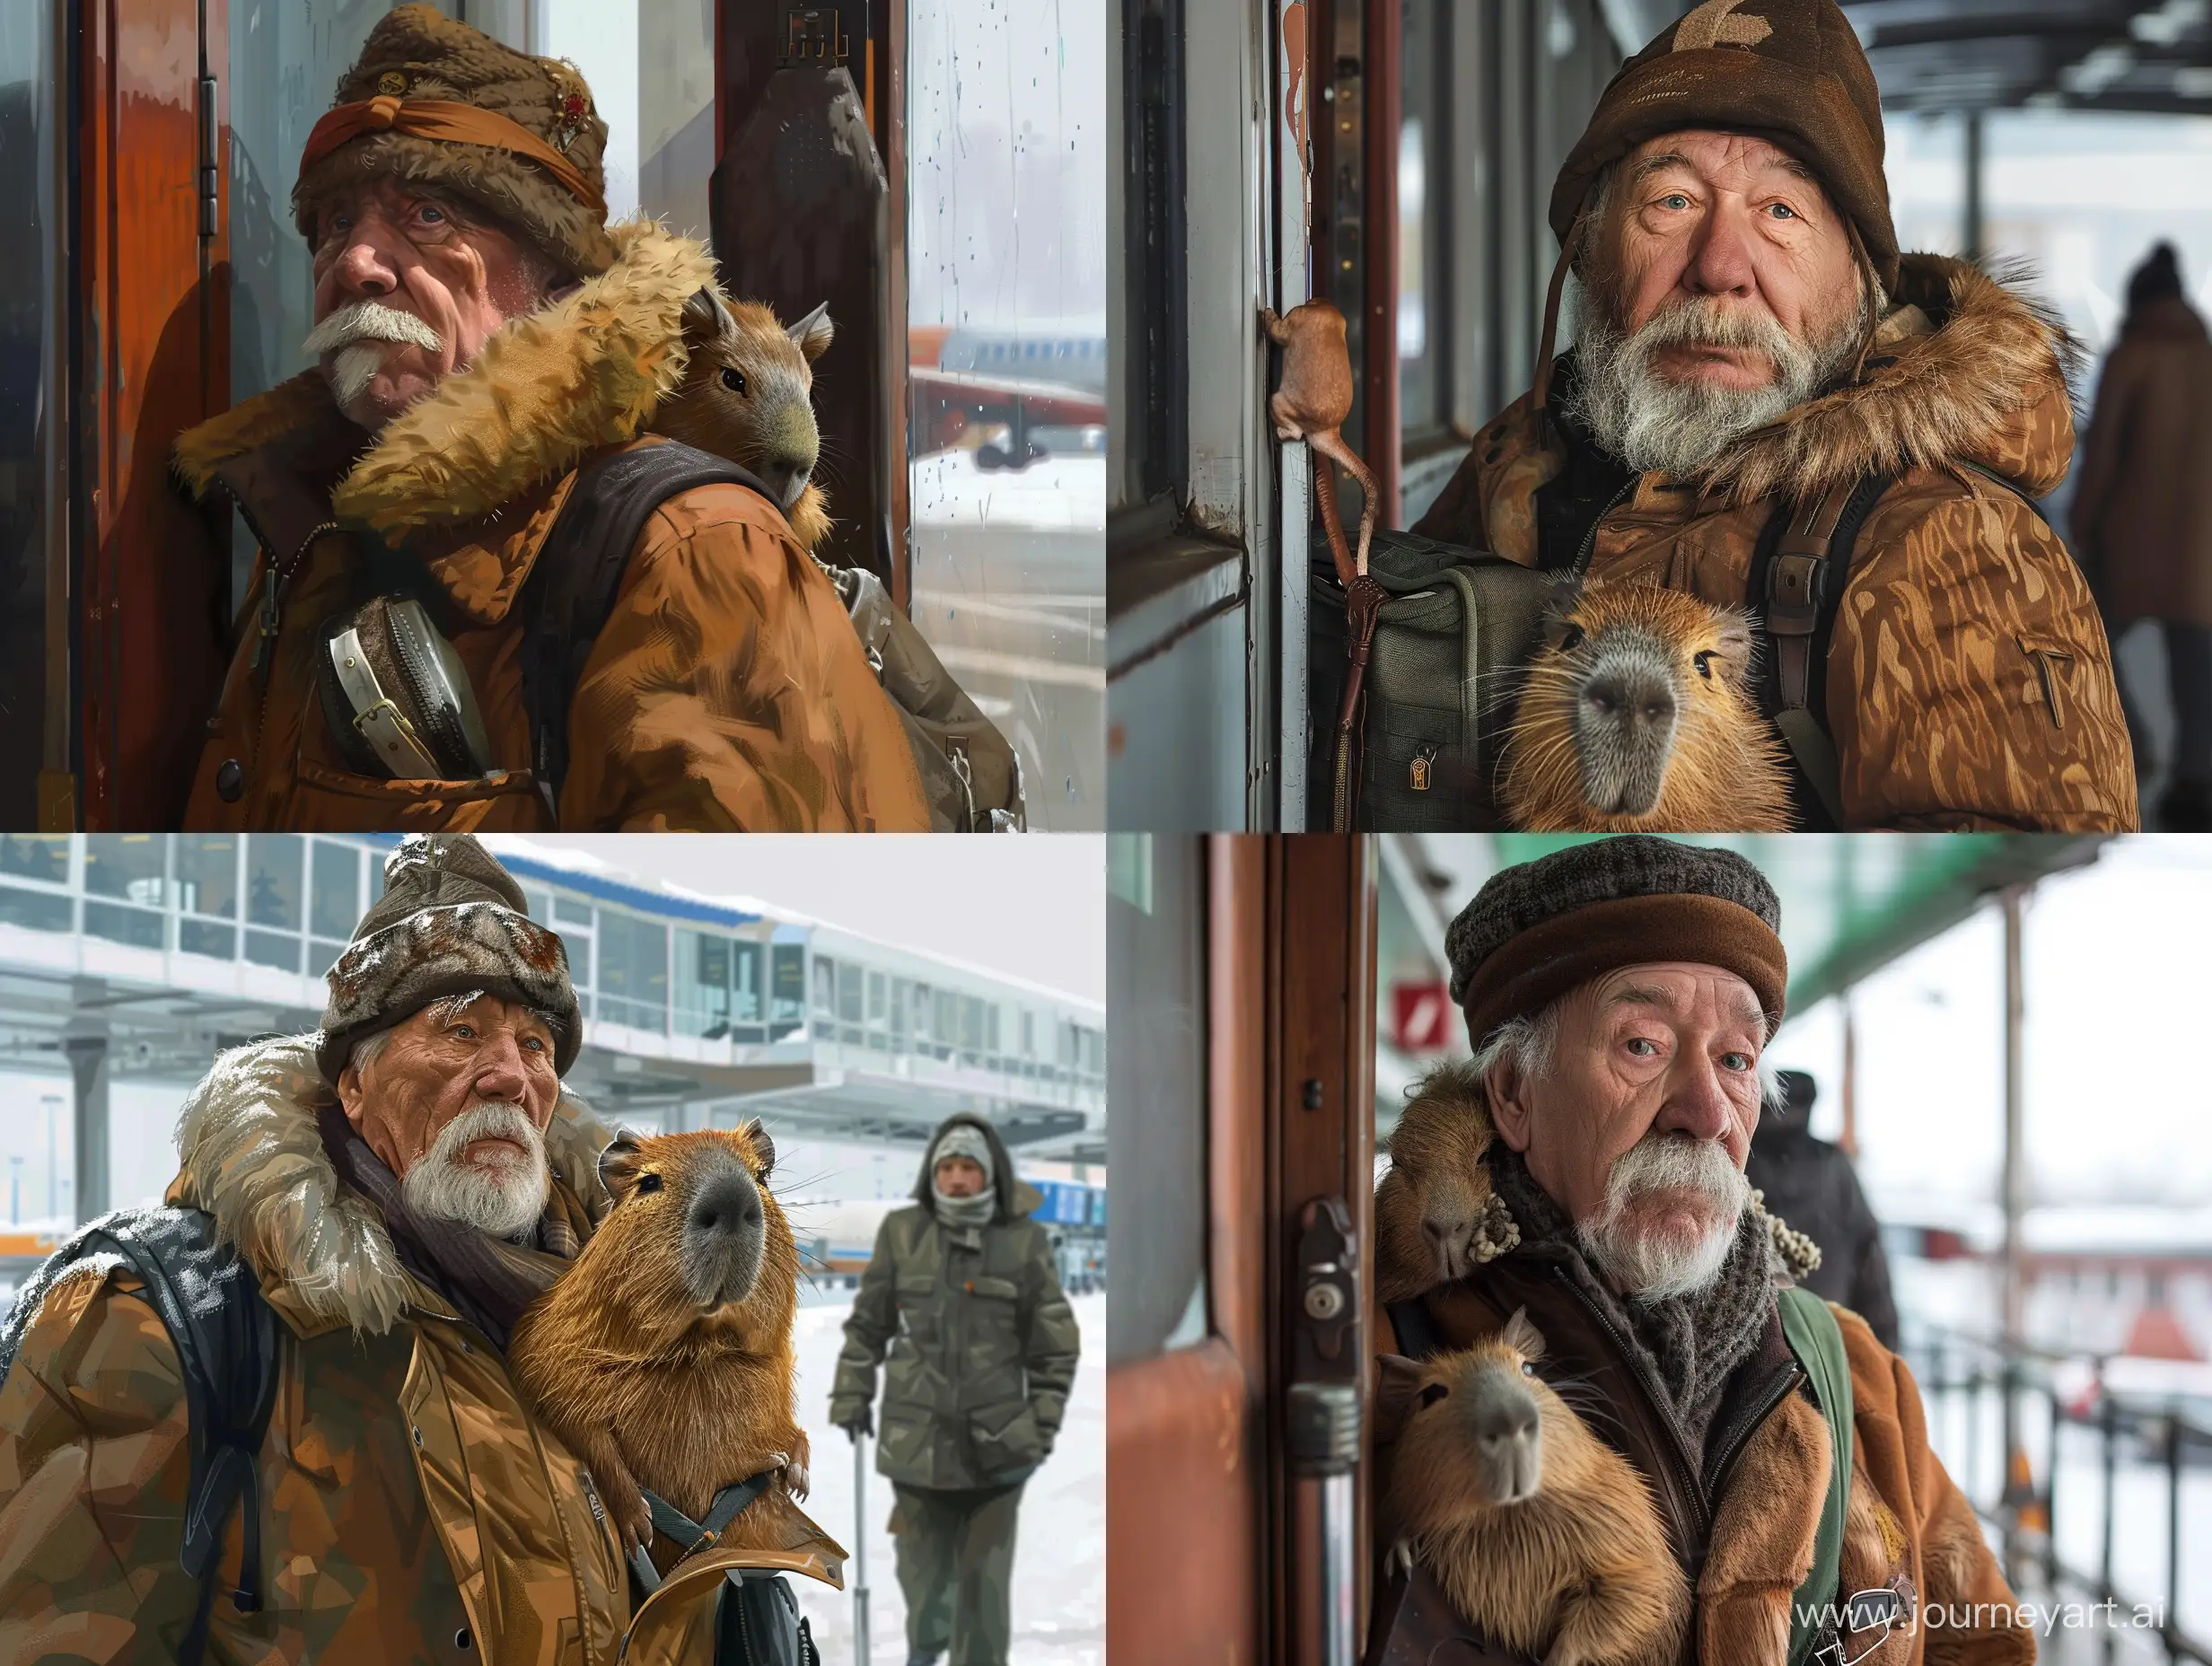 Elderly-Man-in-Ushanka-Hat-at-Tolmachevo-Airport-with-Playful-Capybara